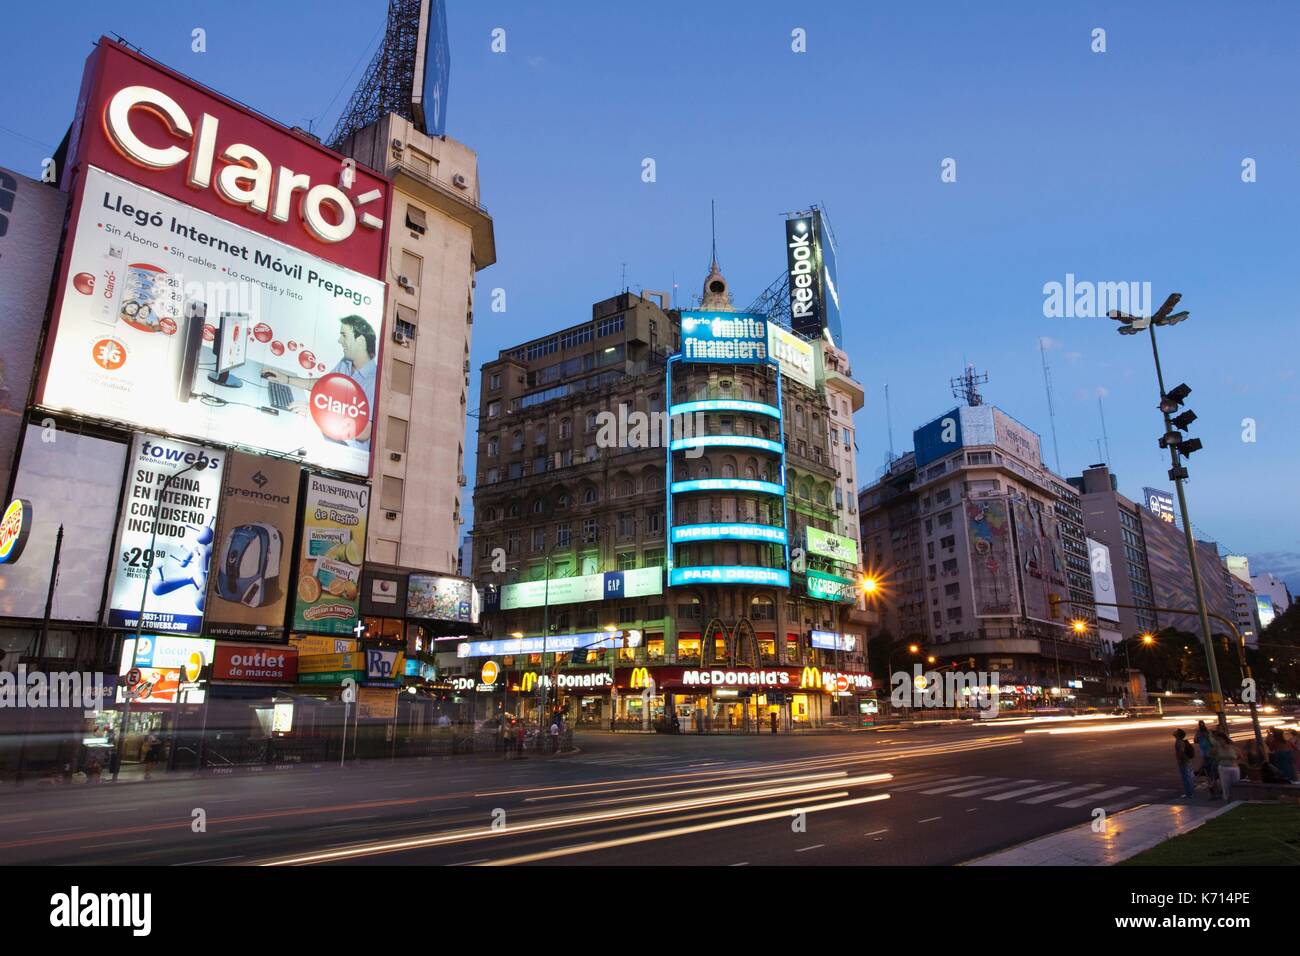 Argentina, Buenos Aires, illuminated signs on Avenida 9 de Julio near Plaza de la Republica Stock Photo